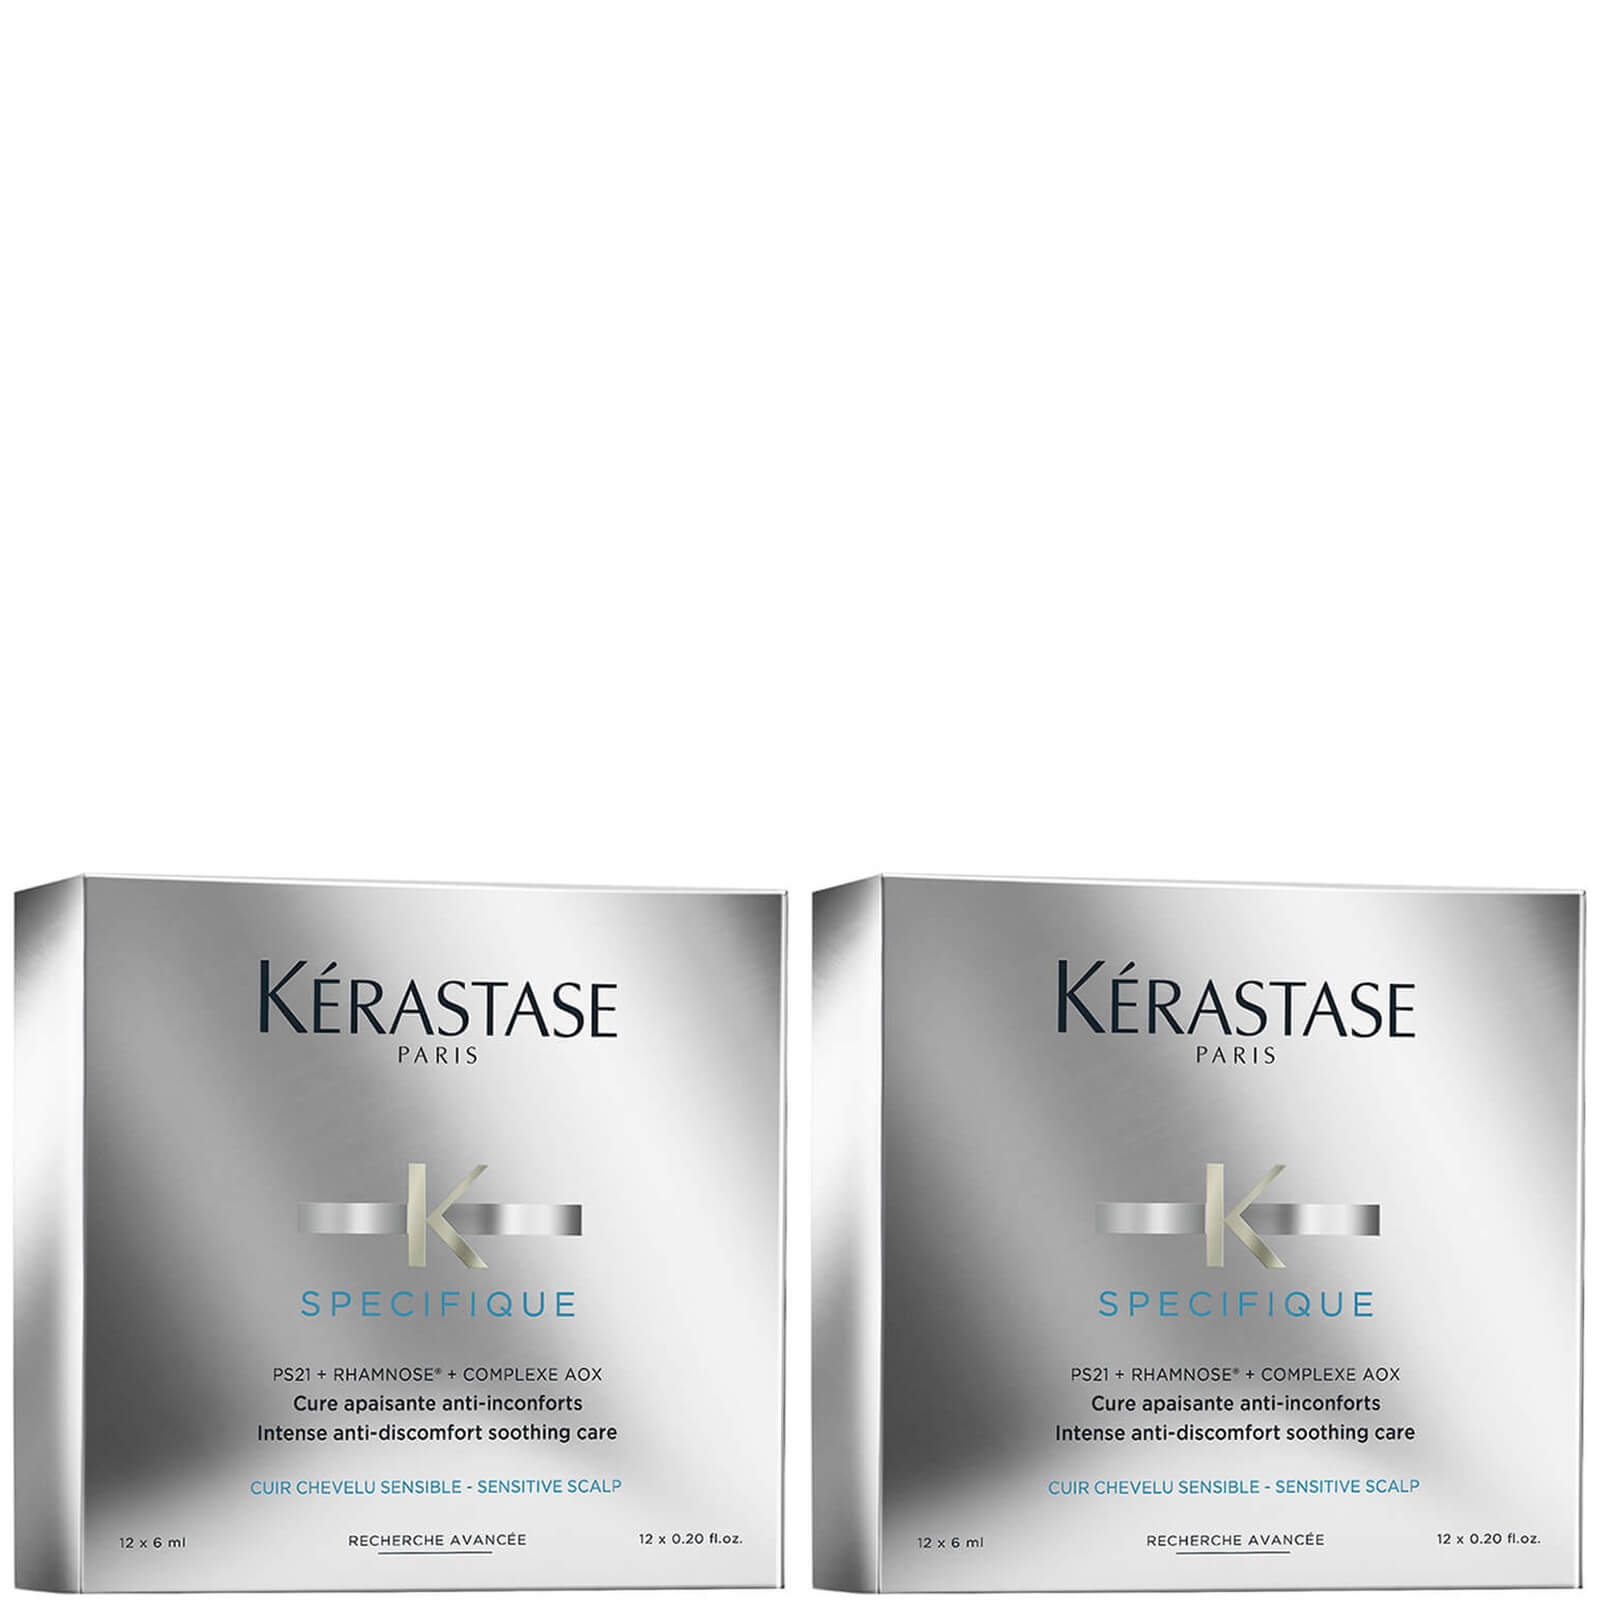 Kerastase Kérastase Specifique Cure Apaisant Anti-Inconforts Treatment 12 x 6 ml Duo